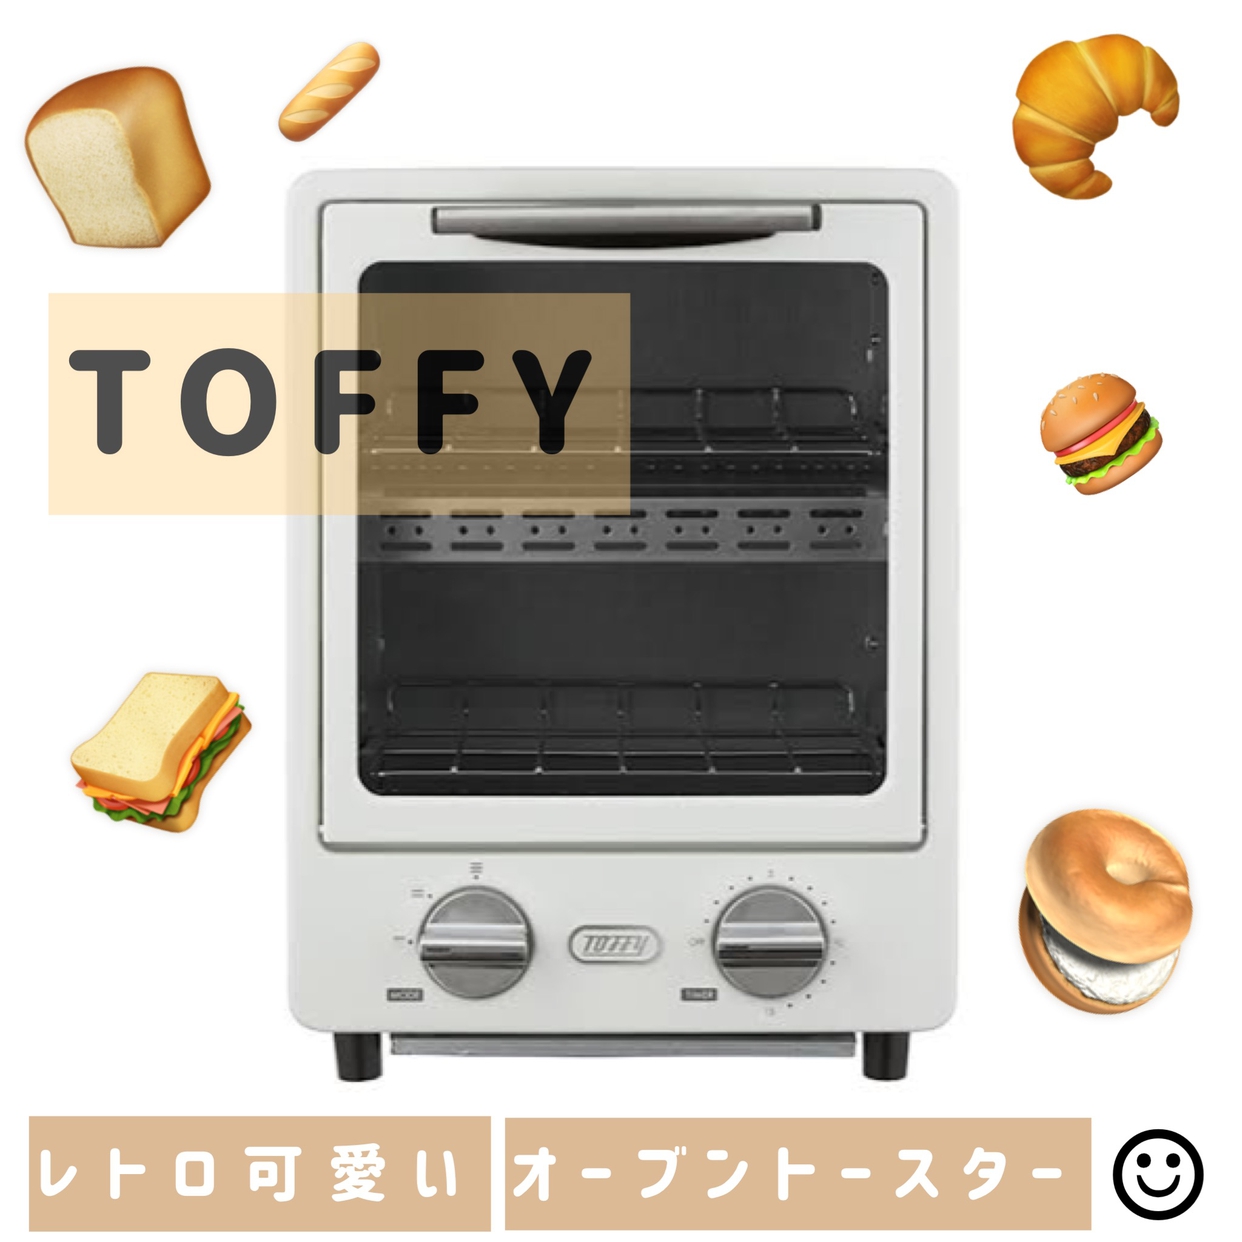 Toffy(トフィー) オーブントースター K-TS1を使ったくららさんのクチコミ画像1